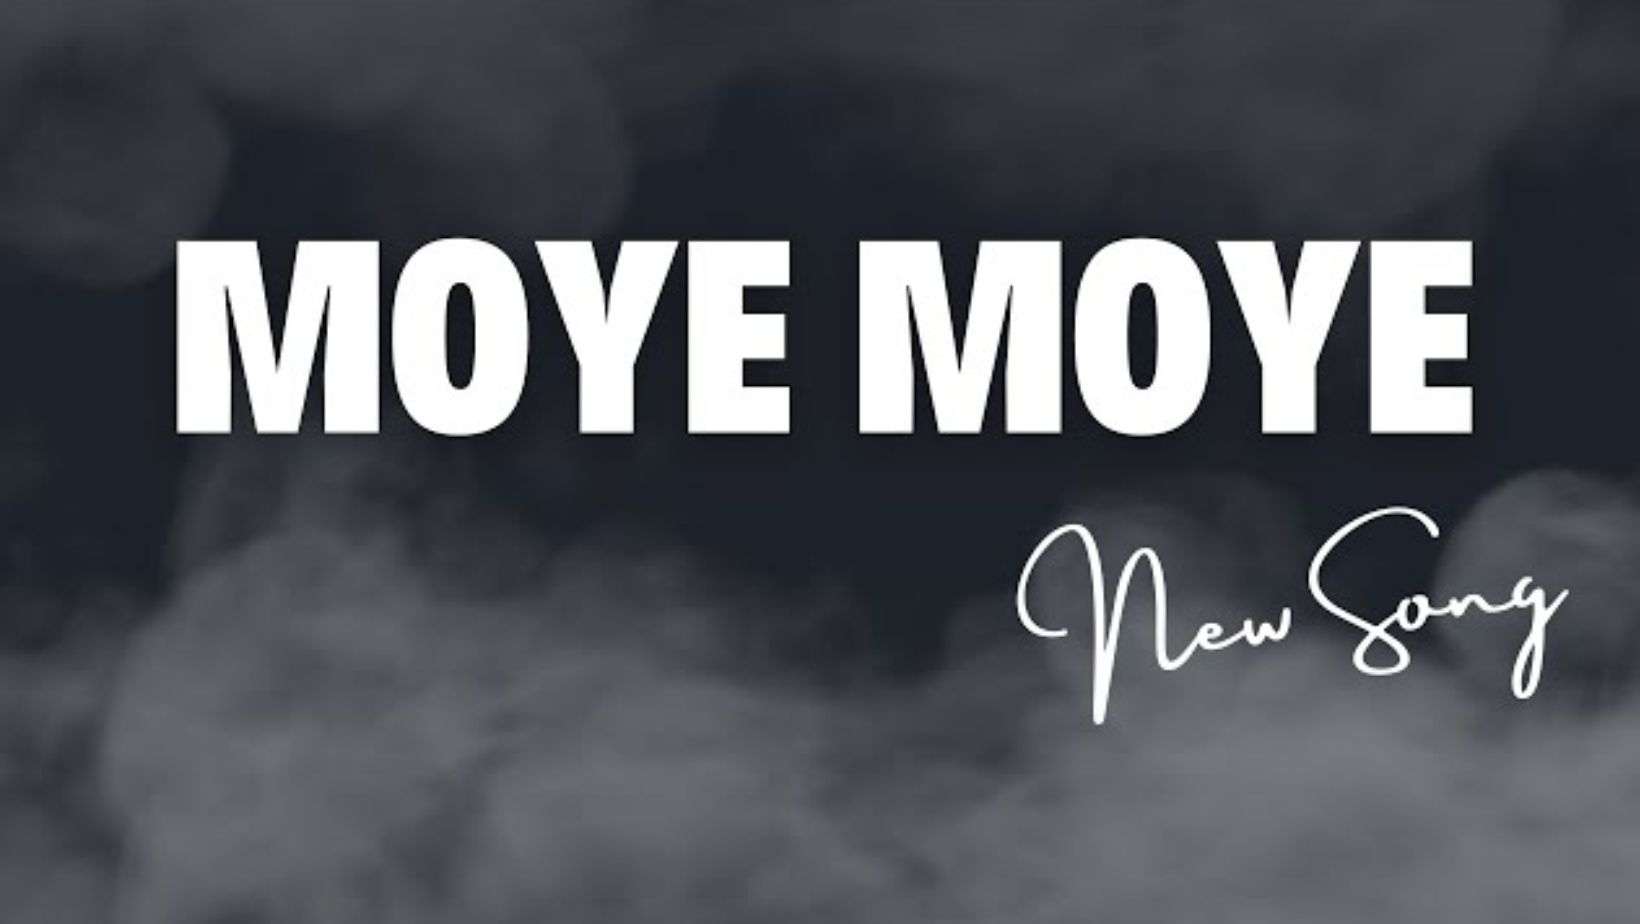 Moye Moye Lyrics